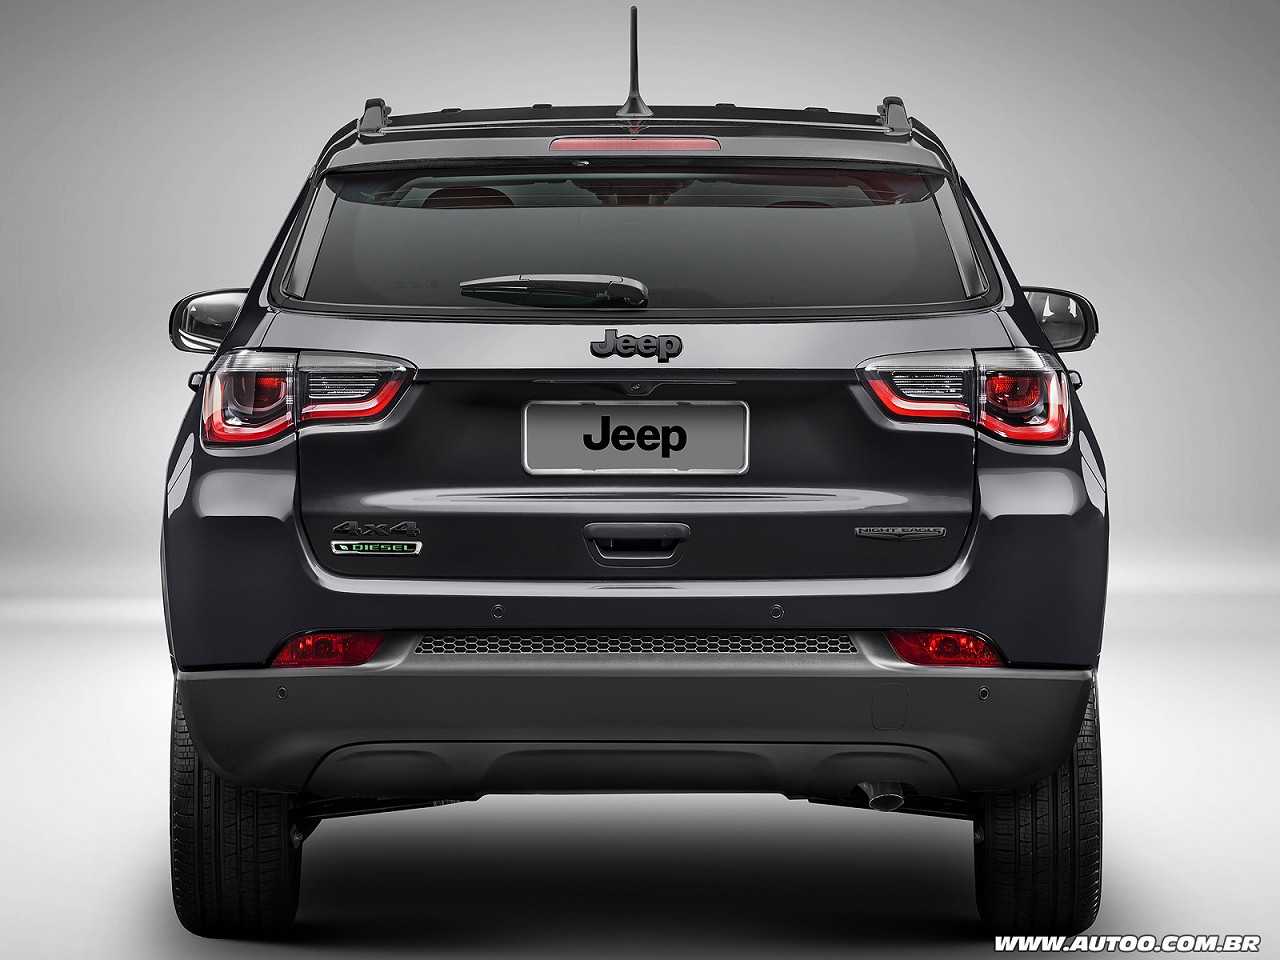 JeepCompass 2018 - traseira